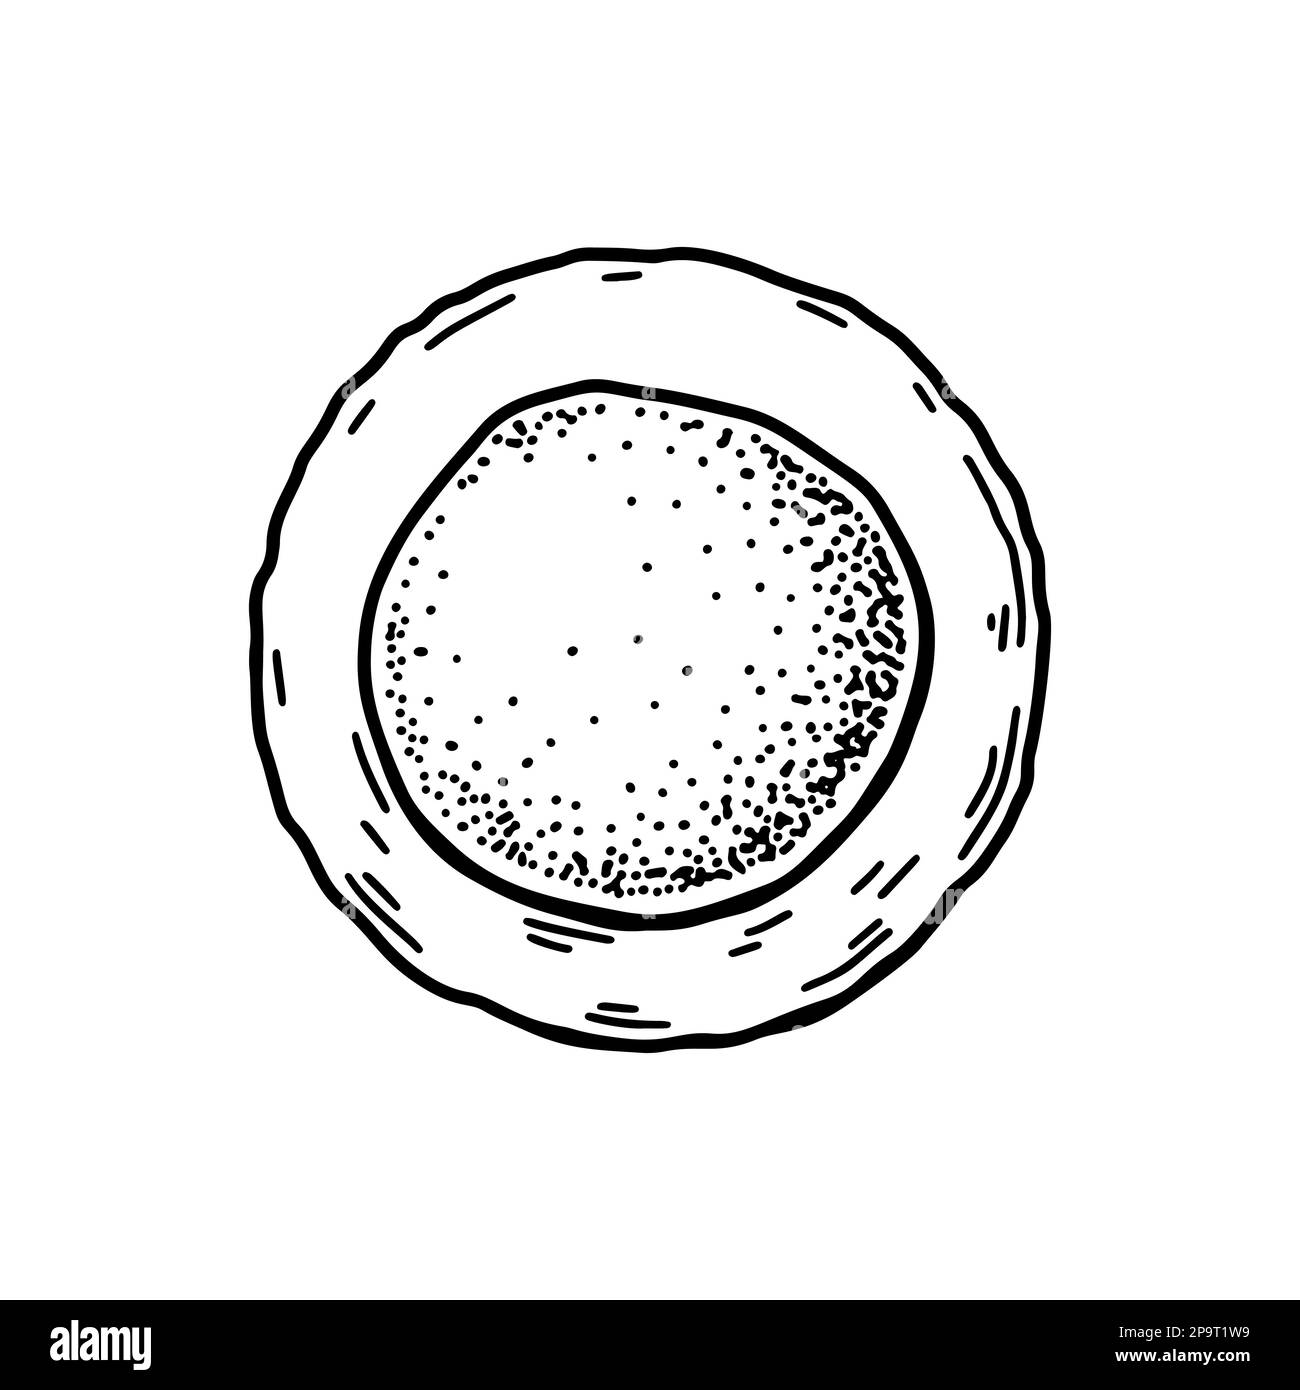 Cellule souche de sang isolée sur fond blanc. Illustration de vecteur de microbiologie scientifique dessiné à la main dans un style d'esquisse Illustration de Vecteur